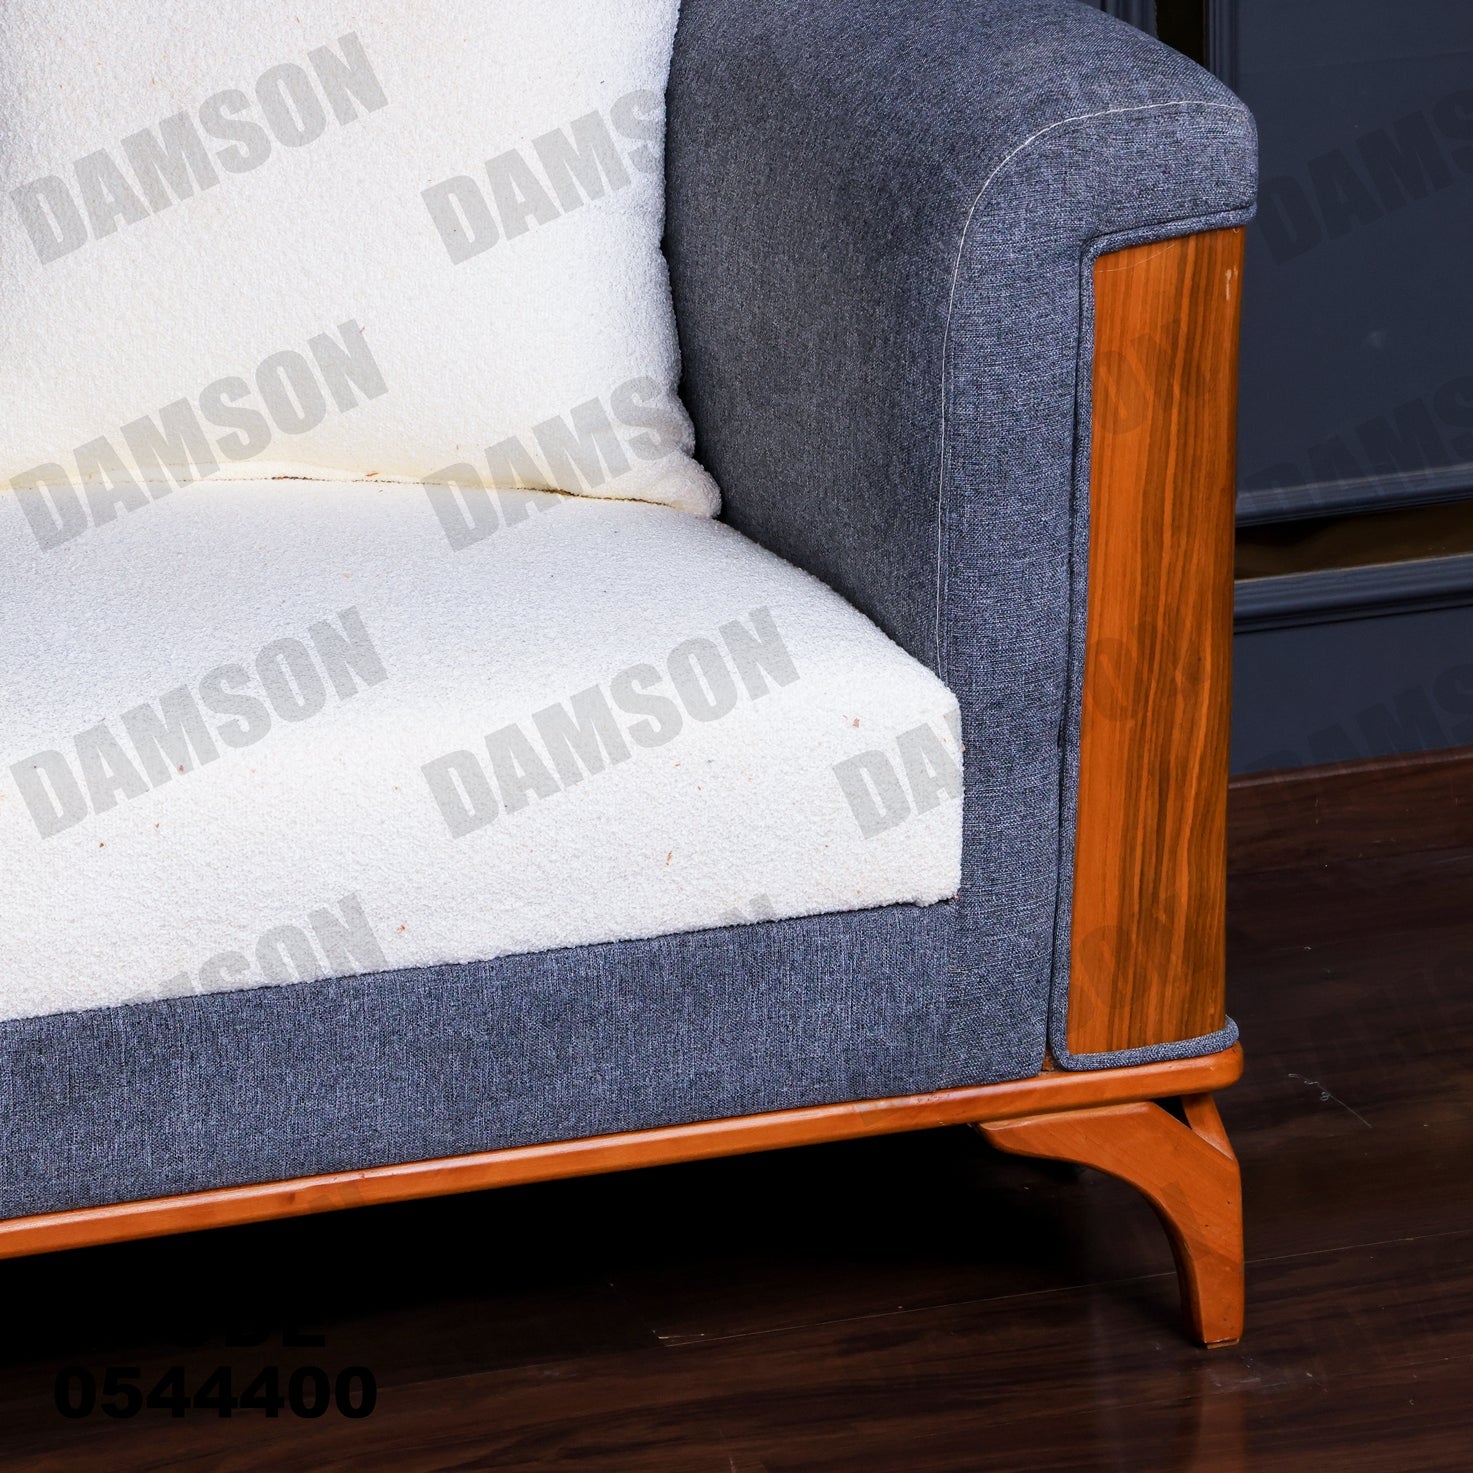 انترية 444 - Damson Furnitureانترية 444